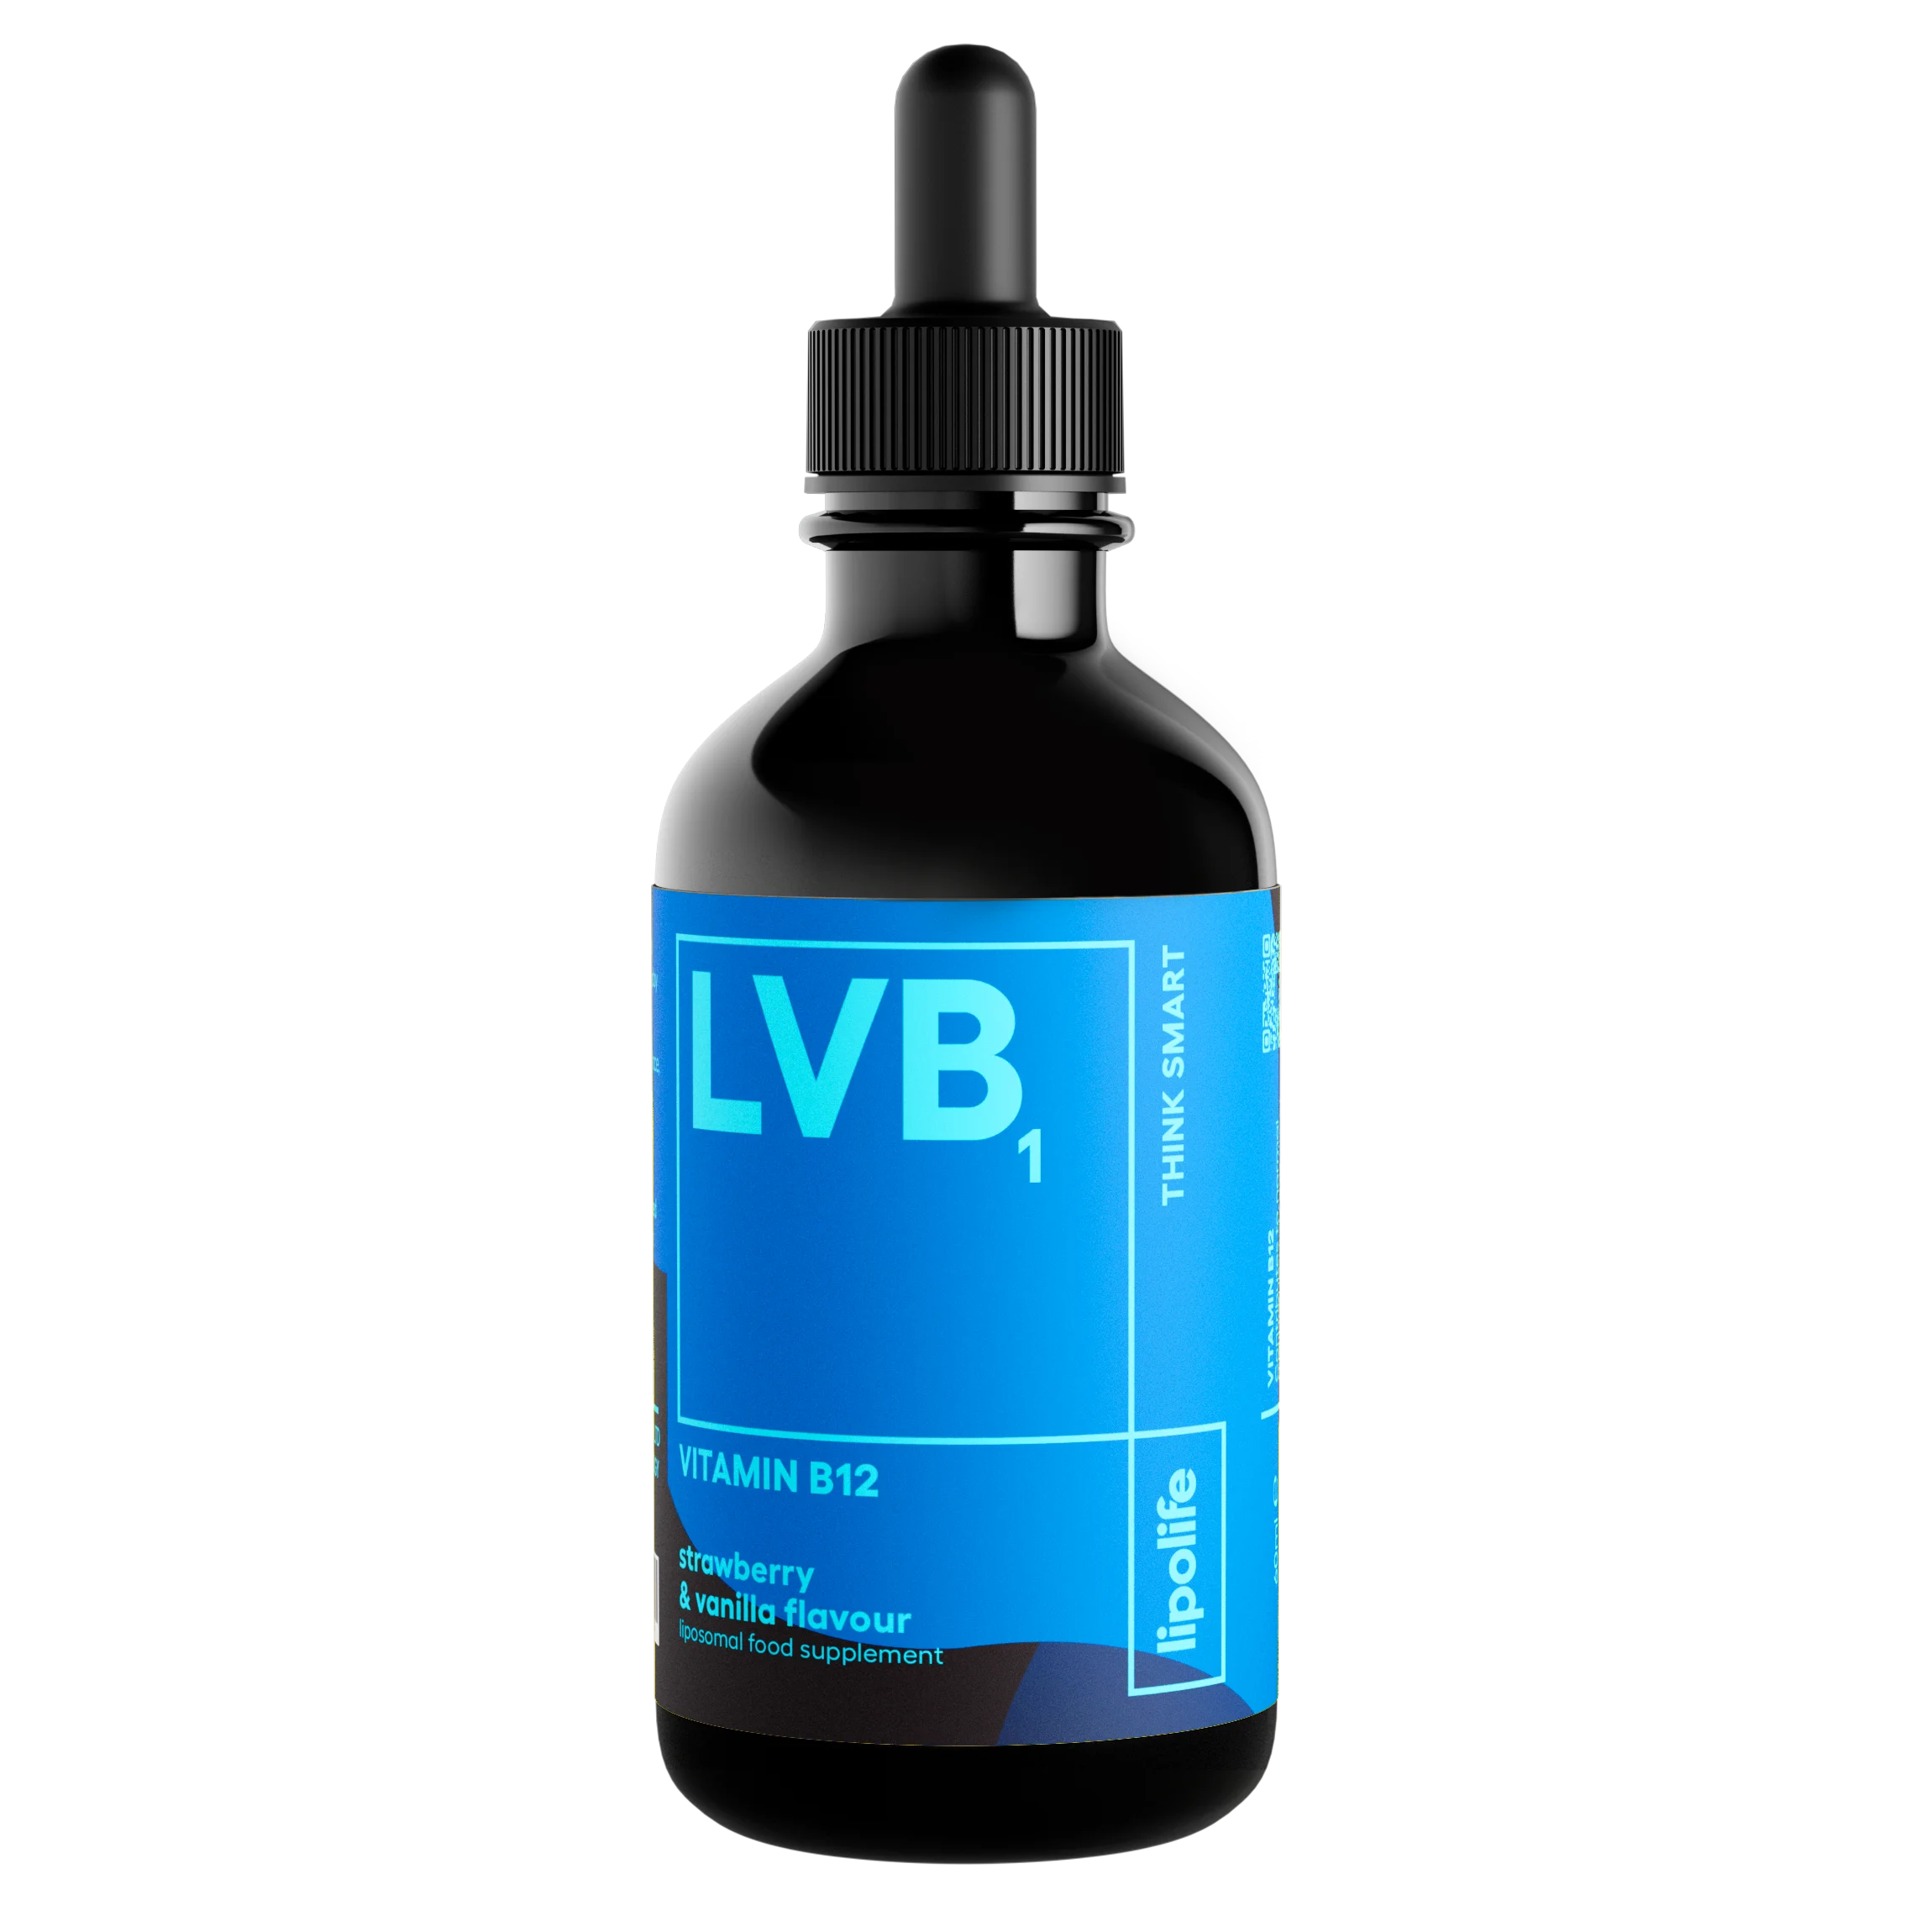 LVB1 - течен и липозомен витамин B12 - ягода и ванилия, 60 мл.